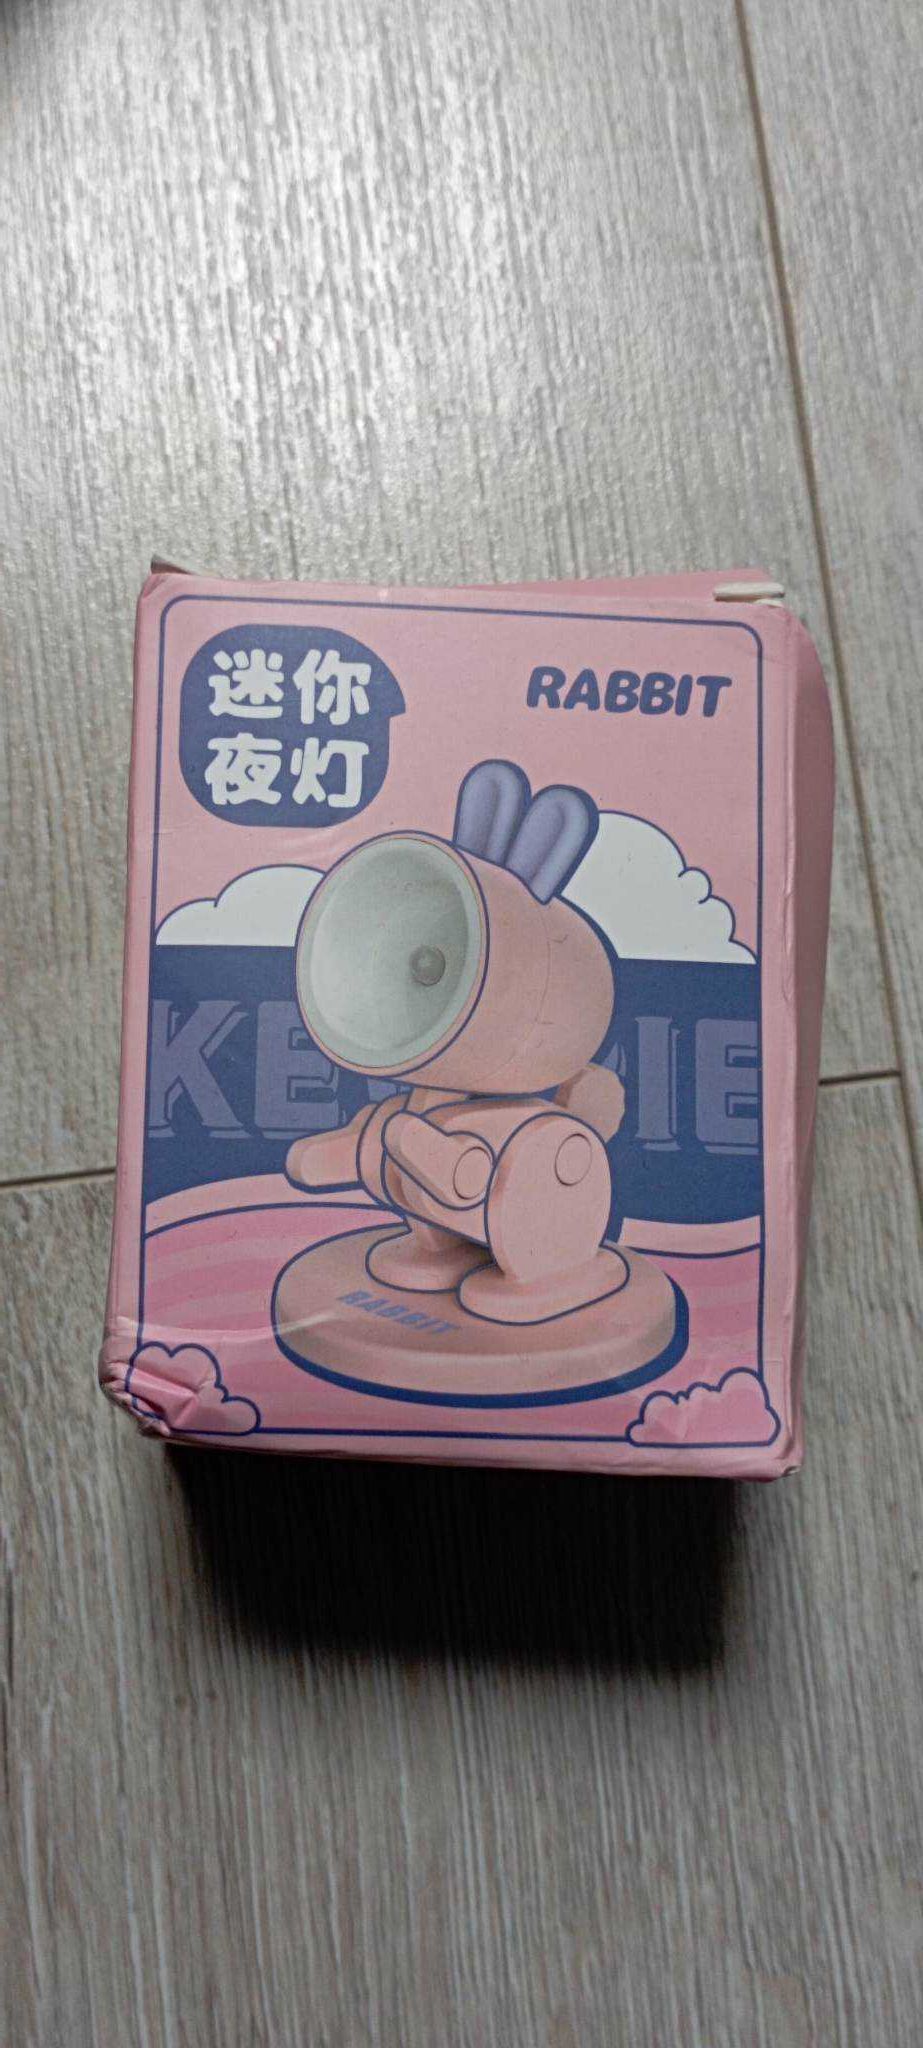 Słodka mini lampka w kształcie króliczka z magnetyczną podkładką